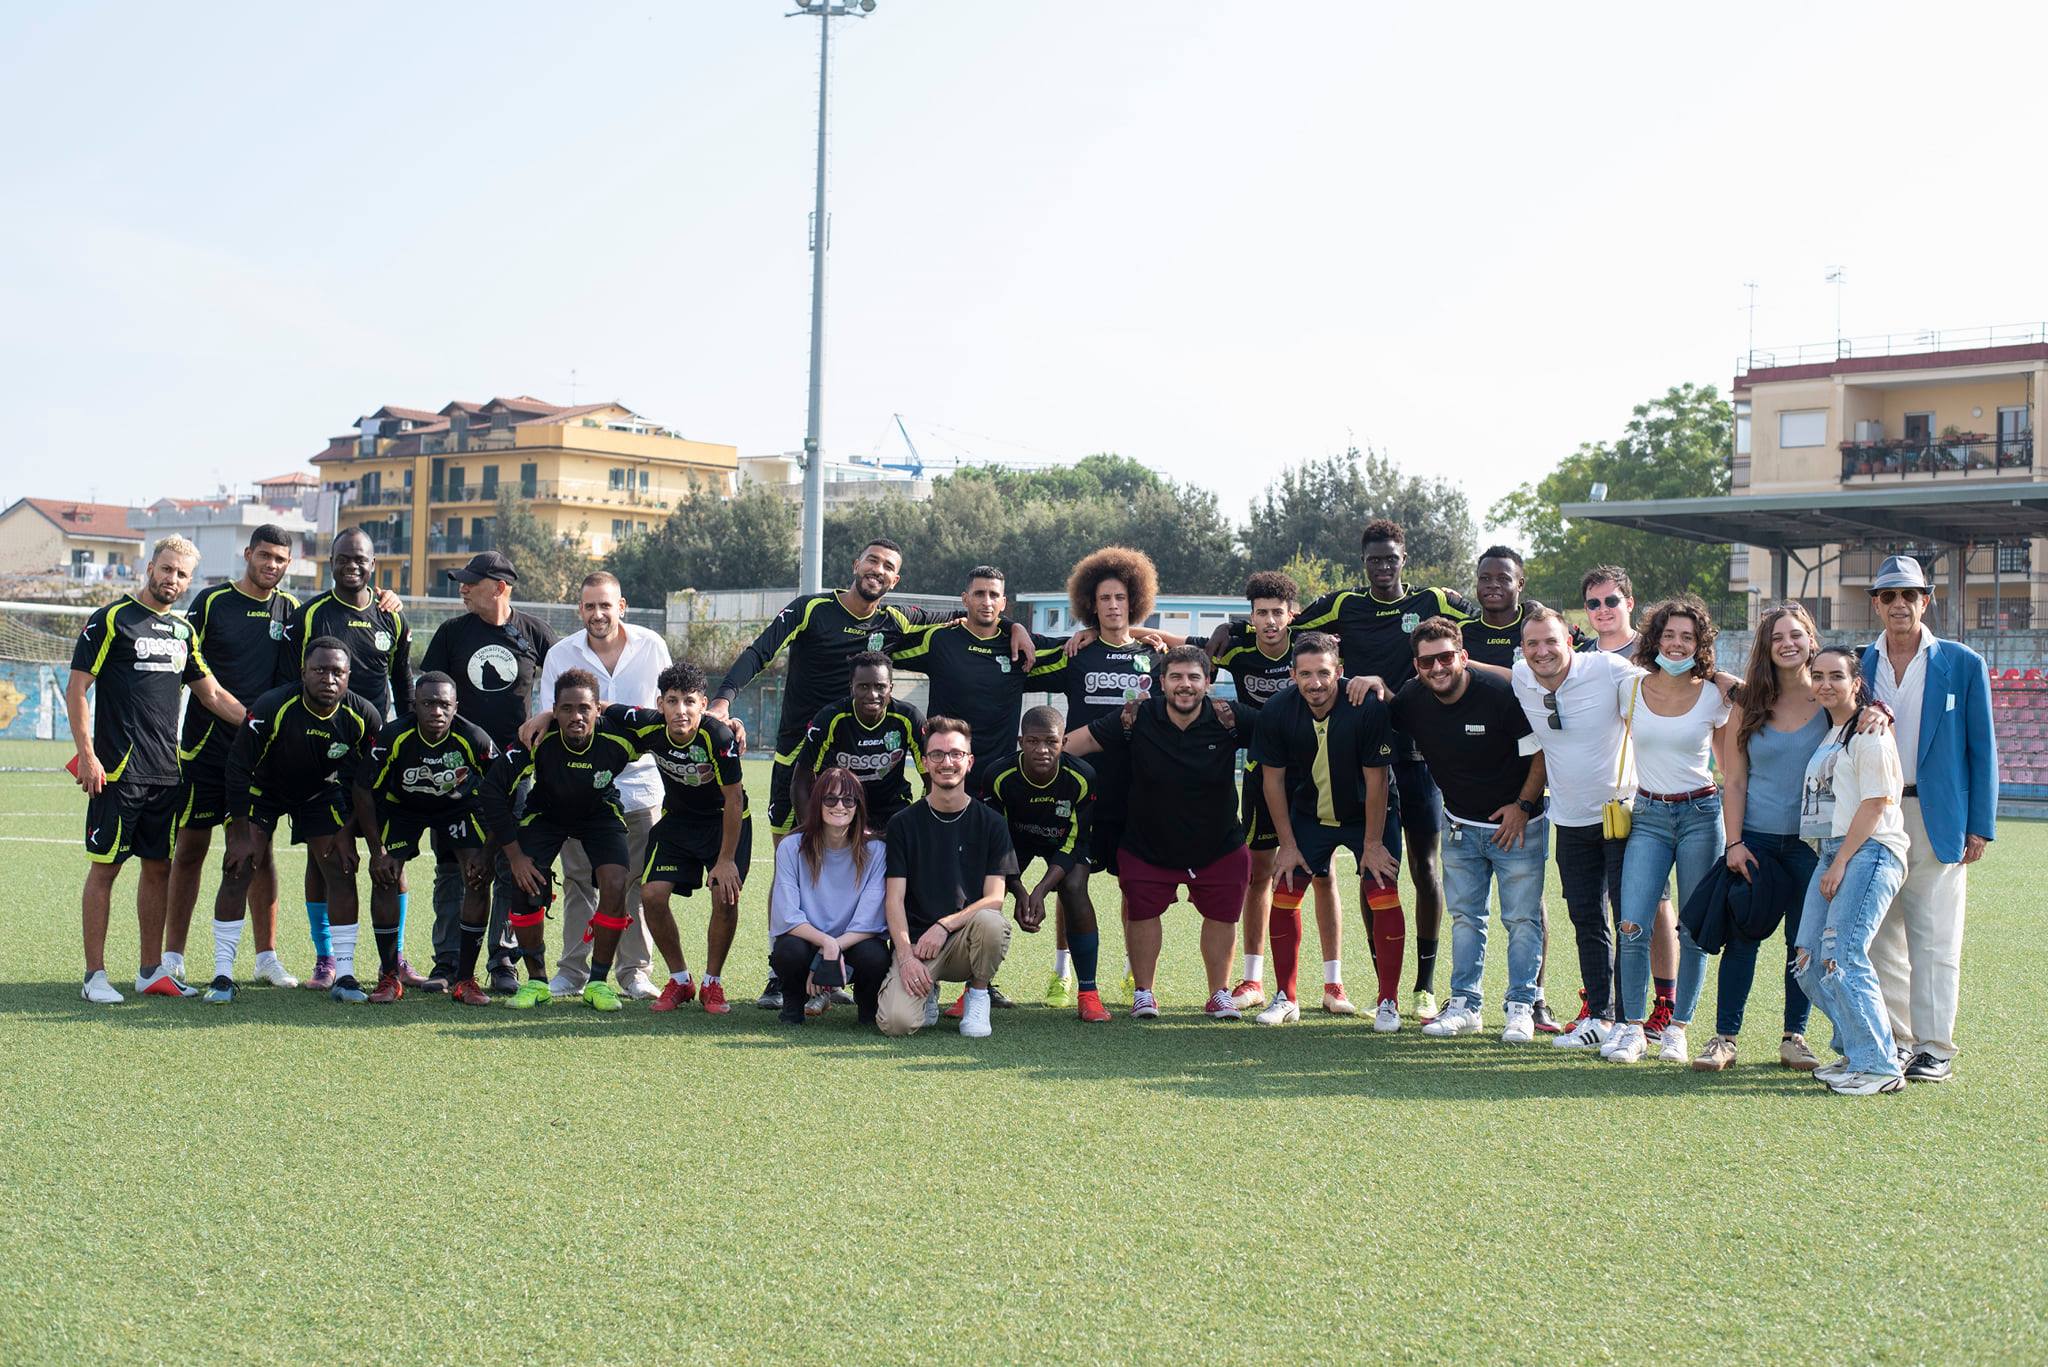 “Le buone pratiche per l’inclusione dei migranti attraverso lo sport”: il Napoli United in campo per la partita dell’inclusione e integrazione